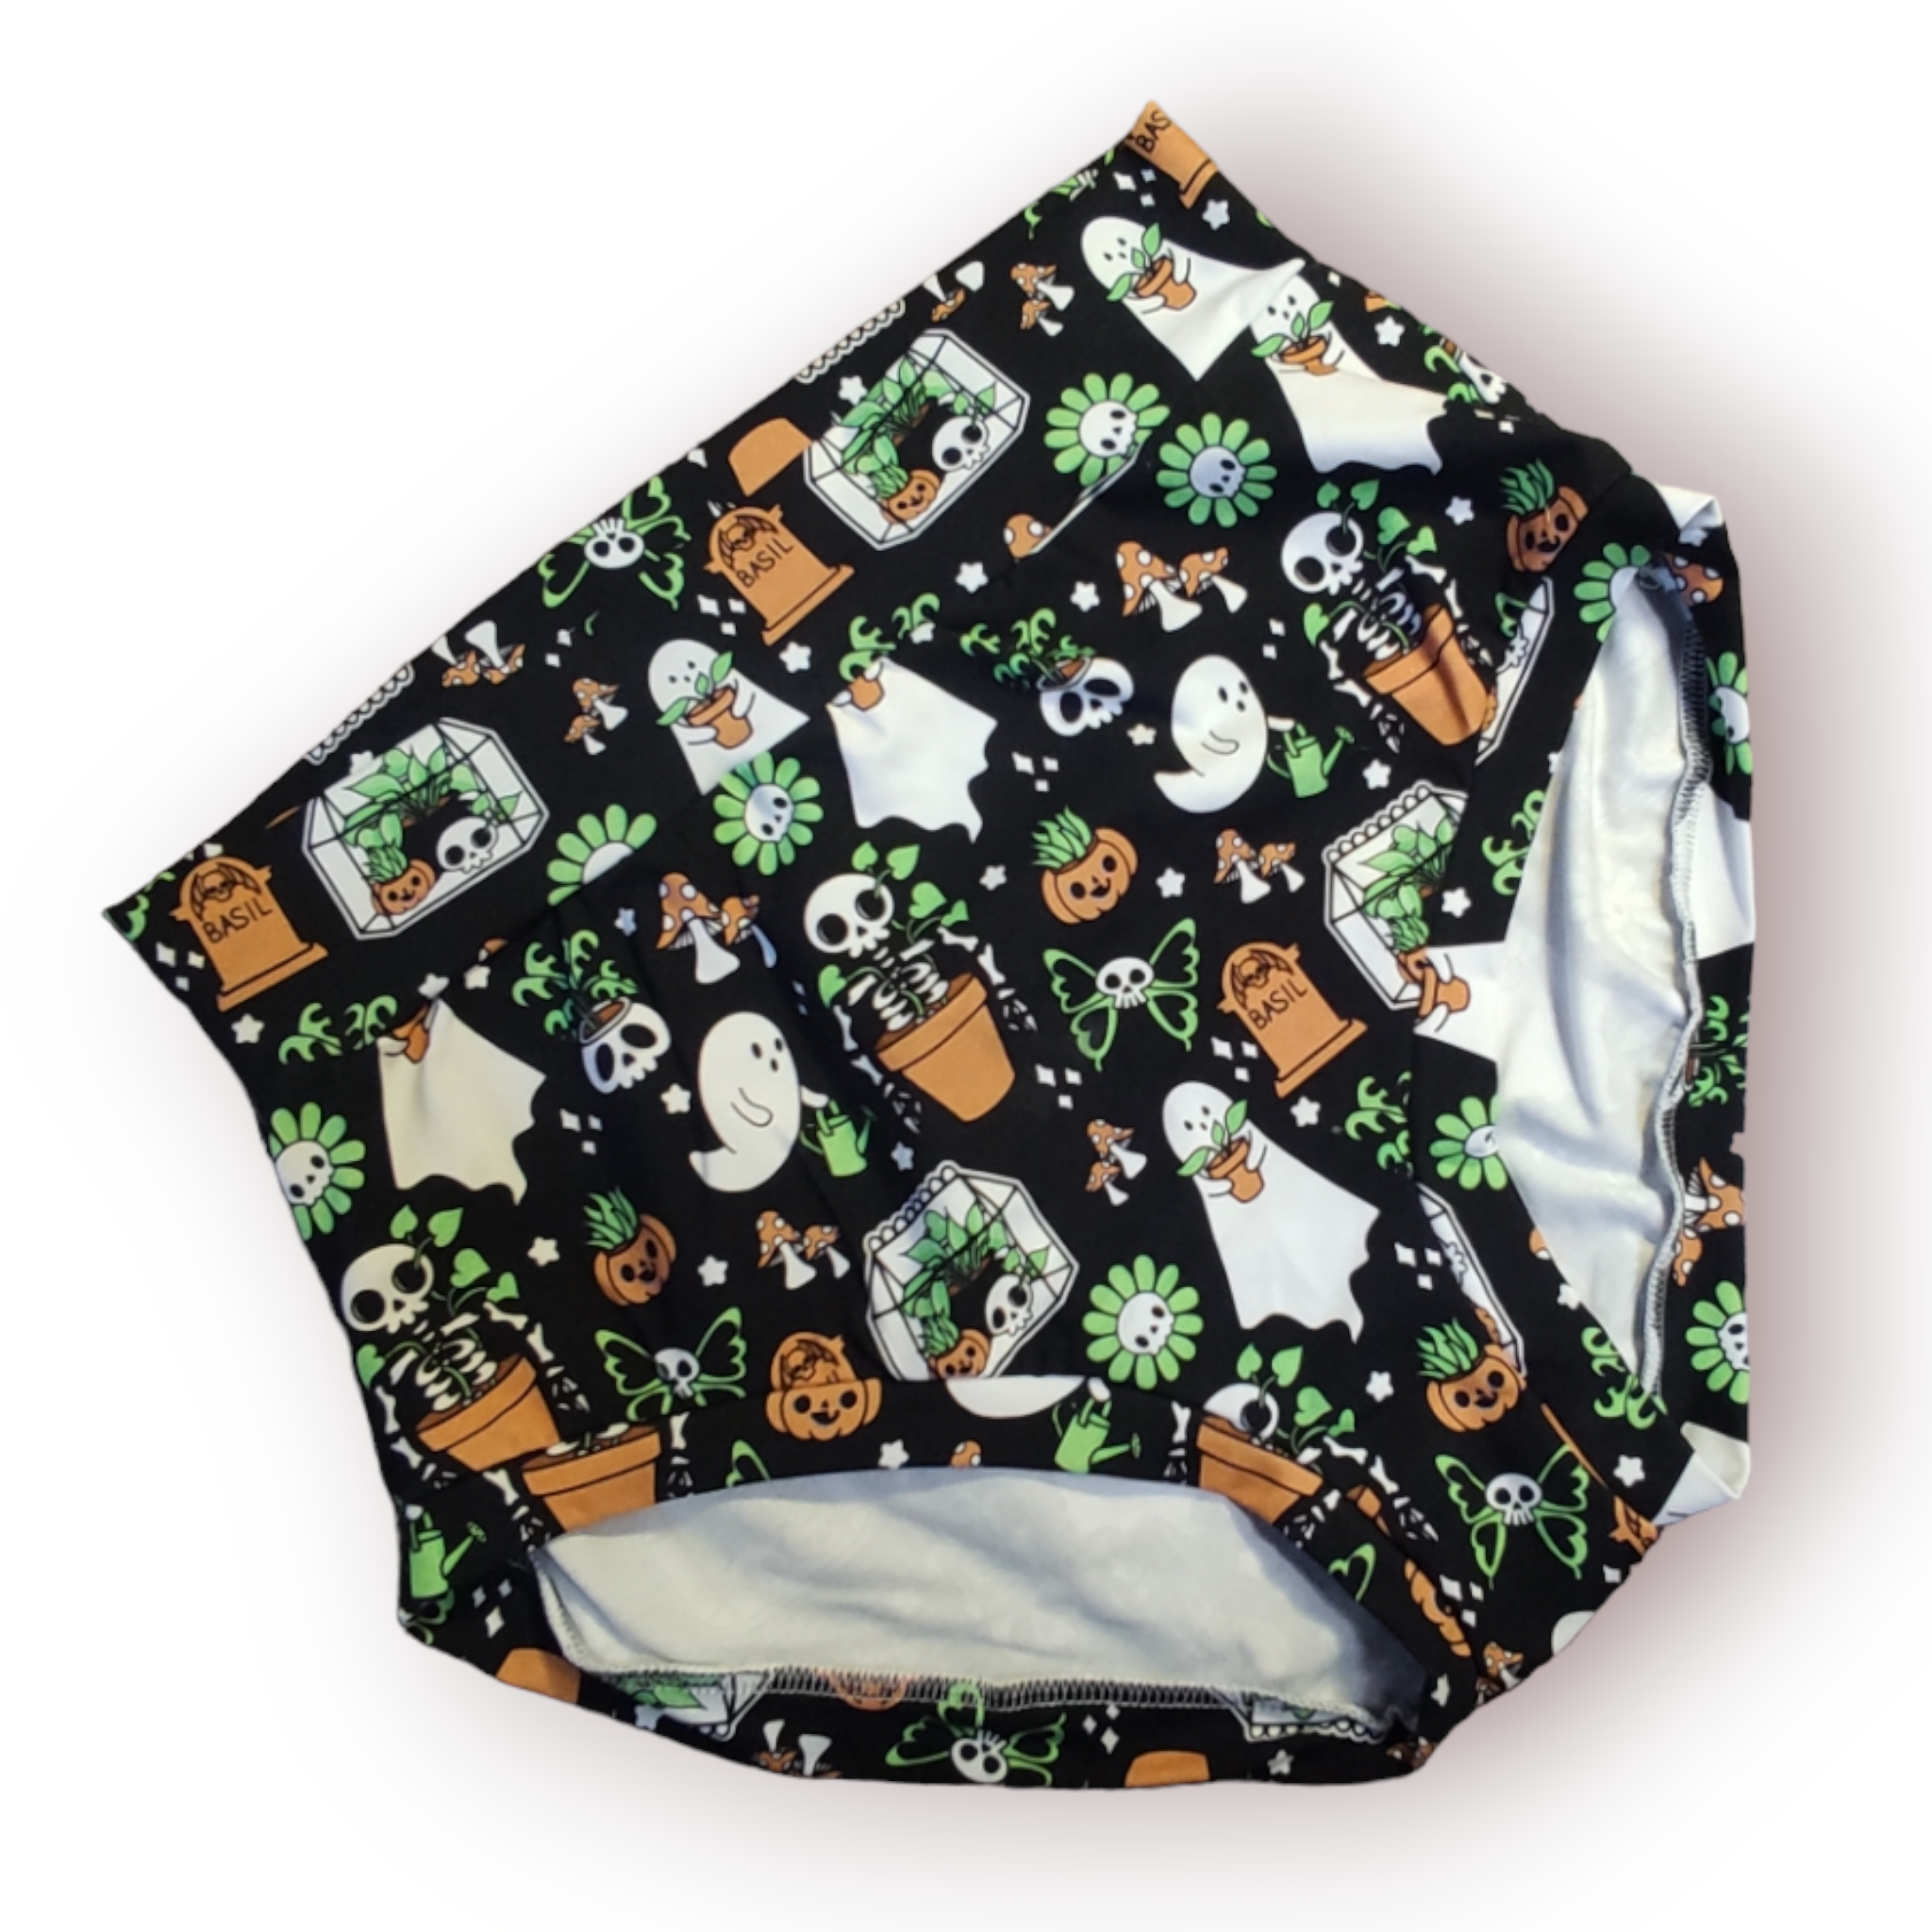 Kids Unisex Scrundies Underwear  Hand Made in the U.K by Lady